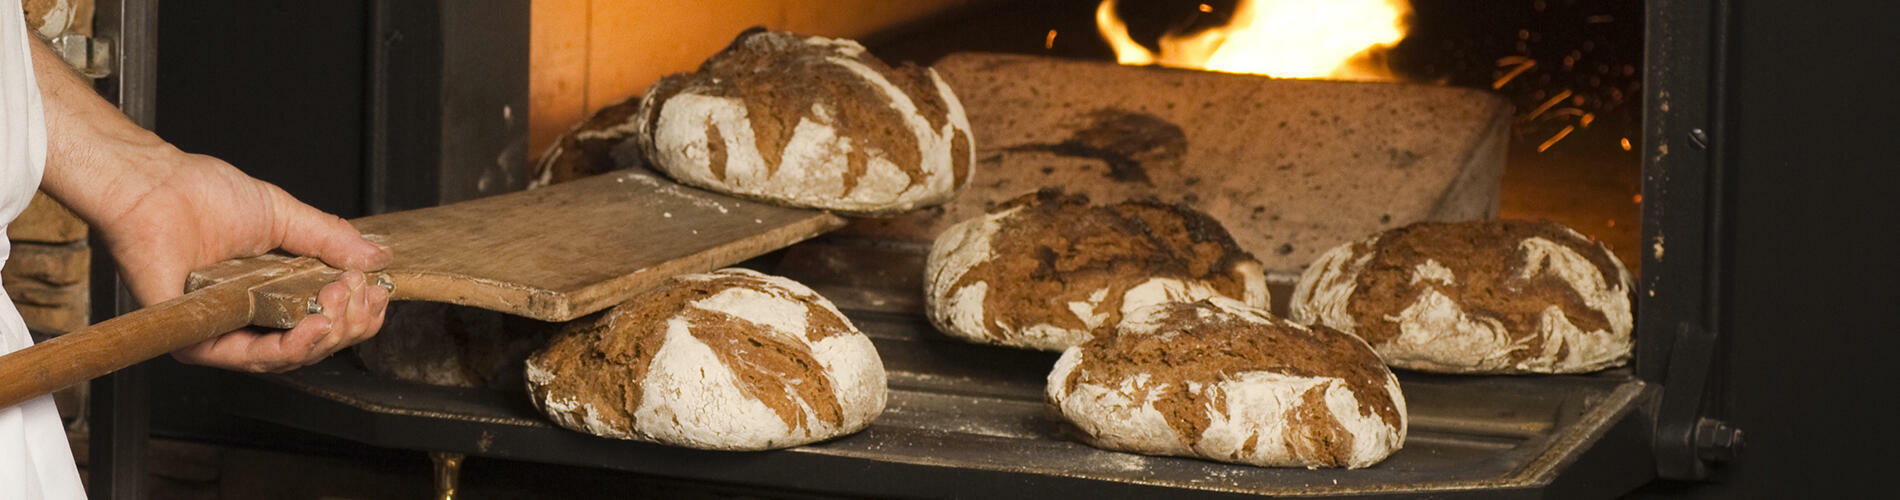 un boulanger qui met du pain dans son four pour illustrer l'expertise d'accompagnement de Cerfrance dans les métiers de l'artisanat